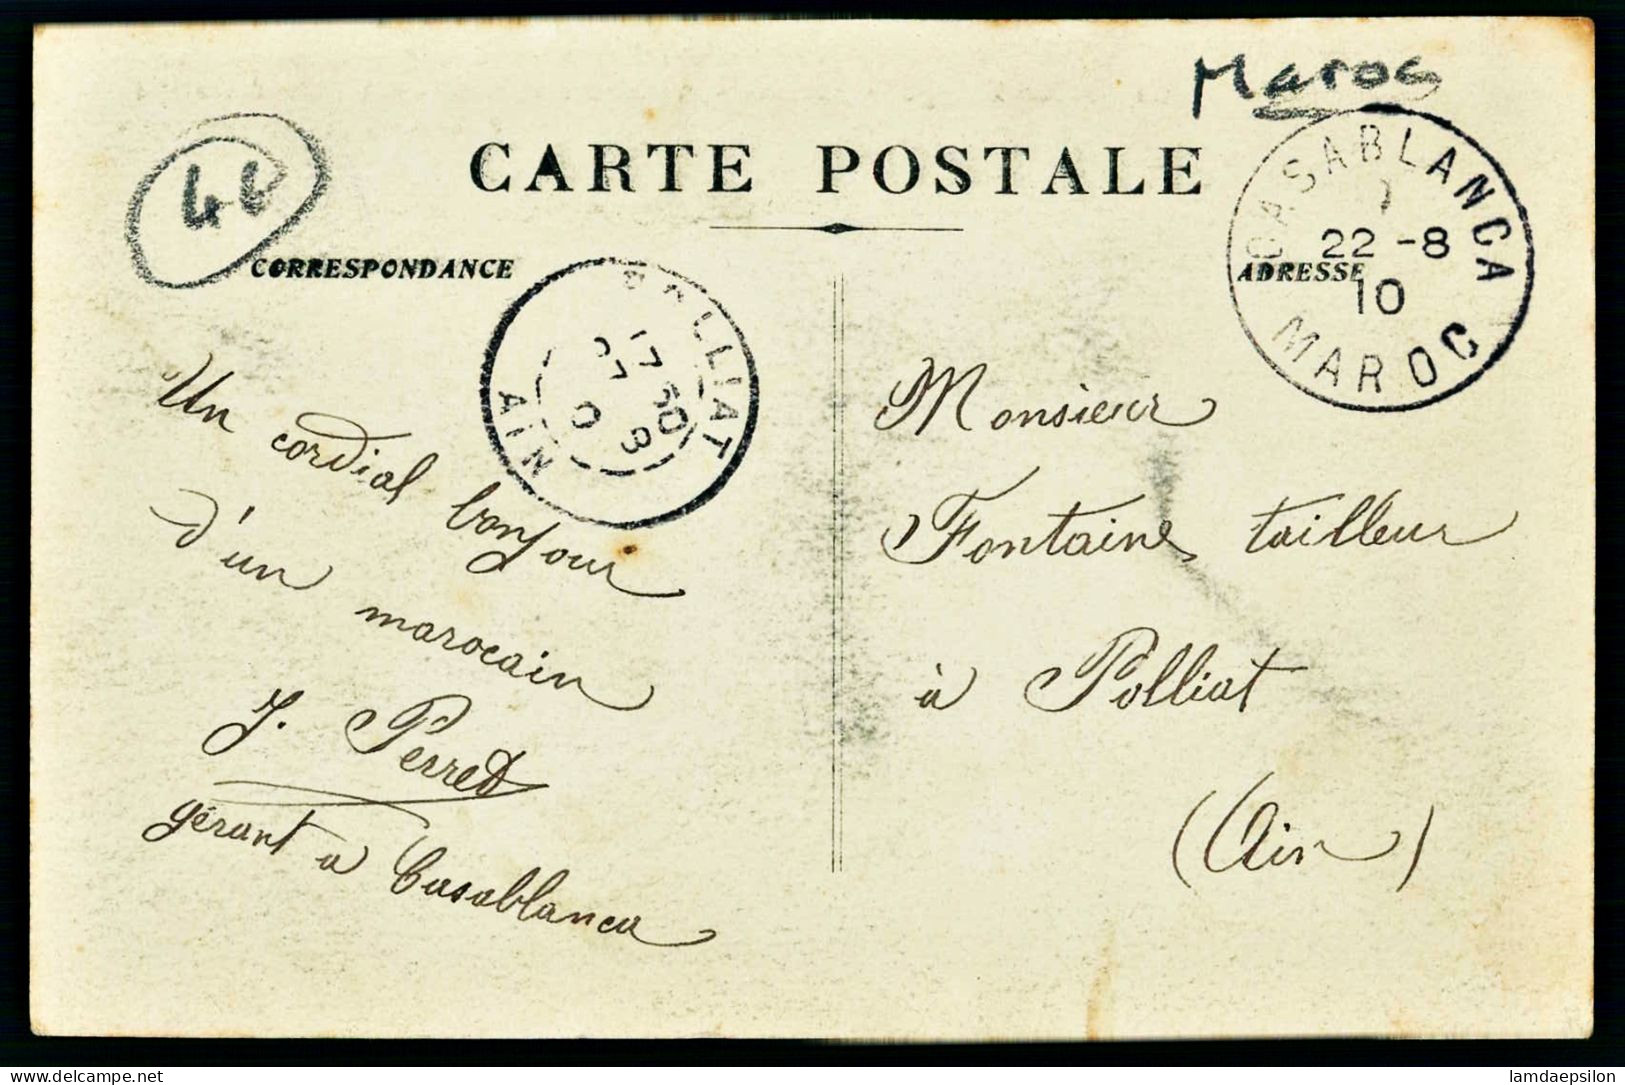 A67  MAROC CPA COLONNE DES ZAERS 1910 - DE SEBBAB A  ARGOUB-SOLTANE - Collections & Lots